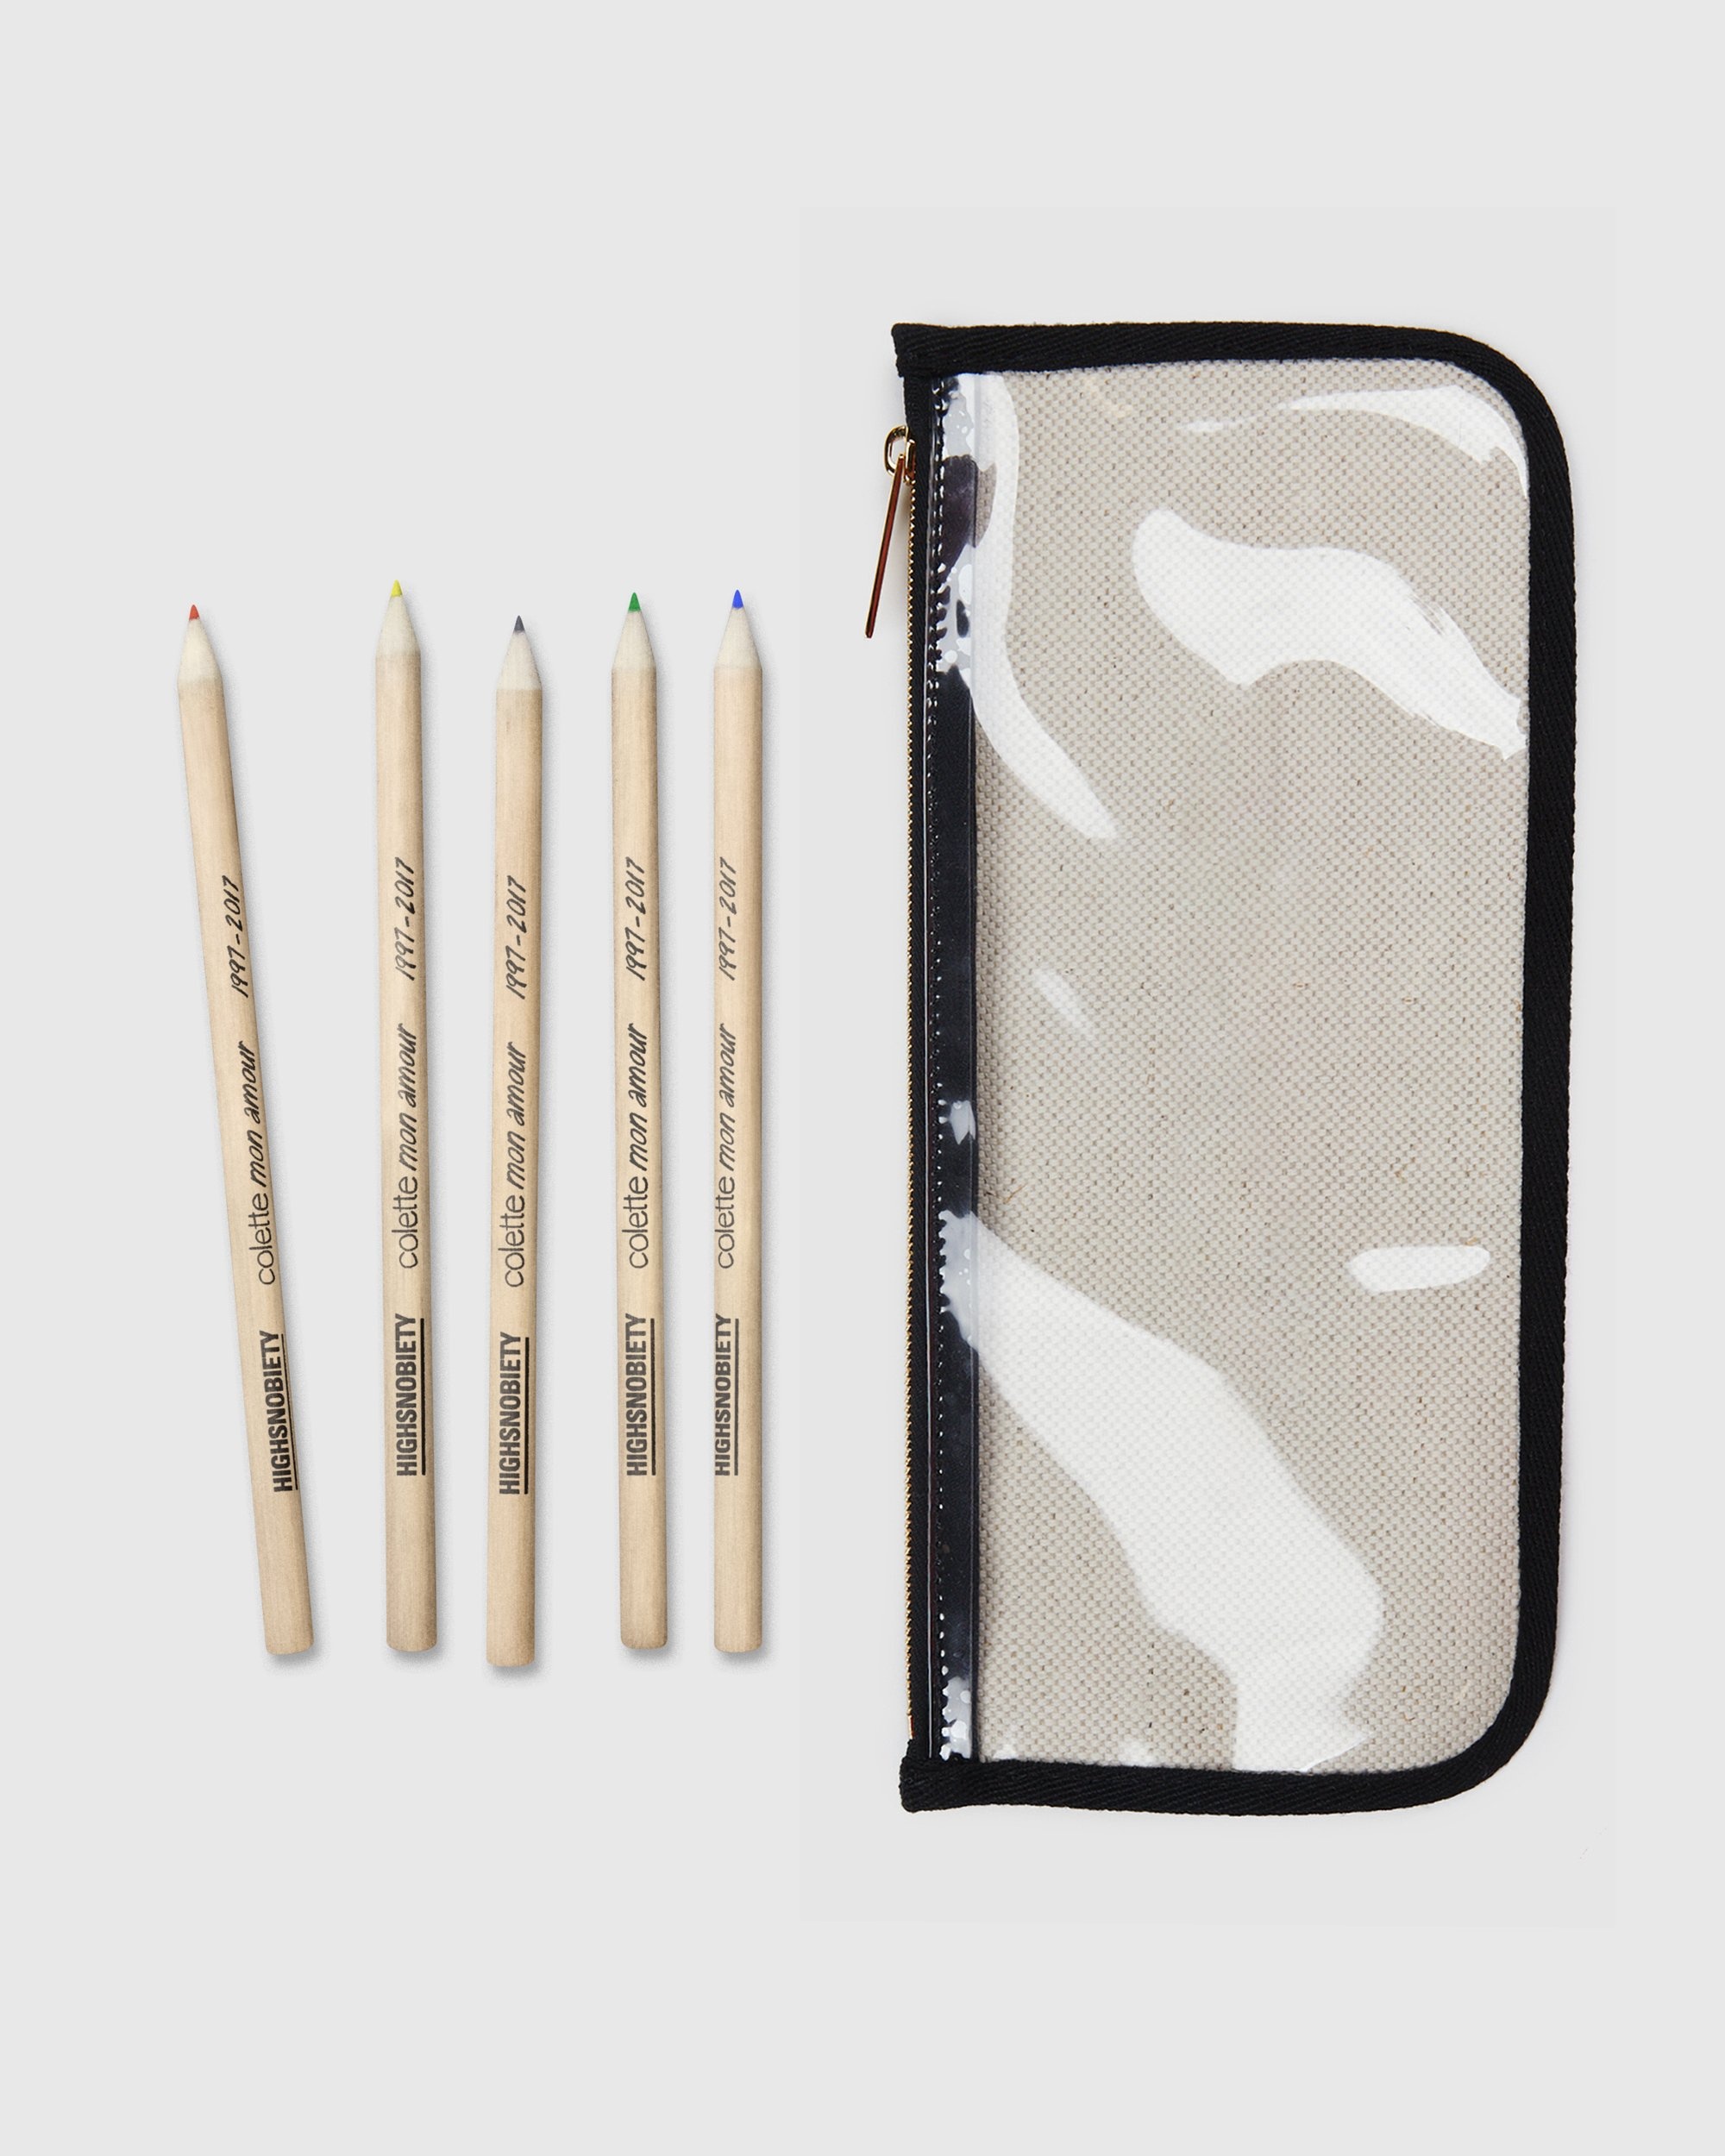 Colette Mon Amour – KAWS Beige Pencil Case - Desk Accessories - Beige - Image 4